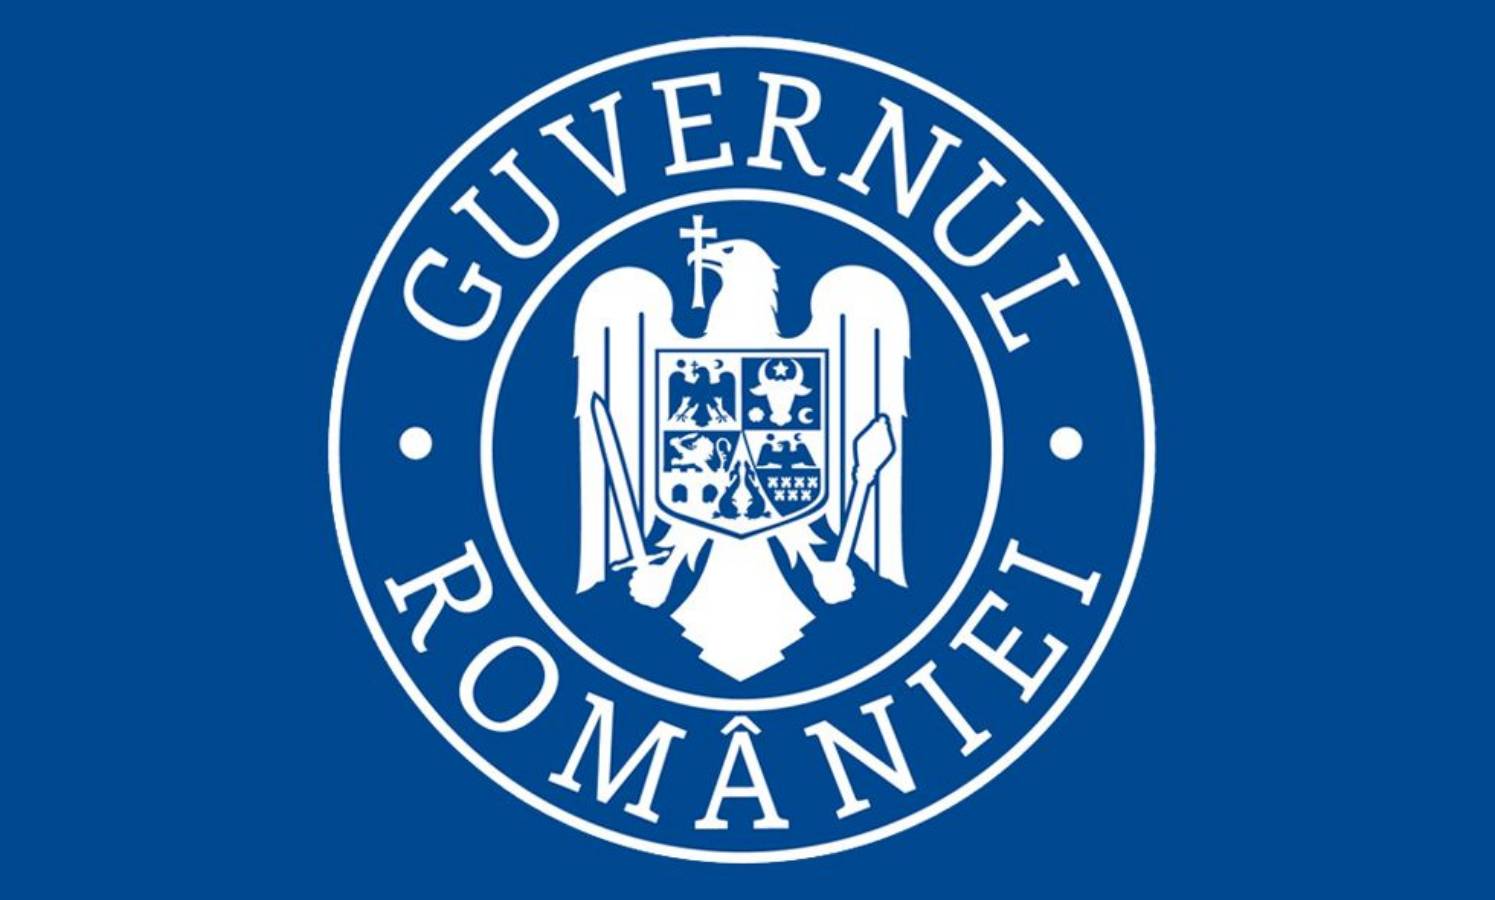 De Roemeense regering is in een goed humeur